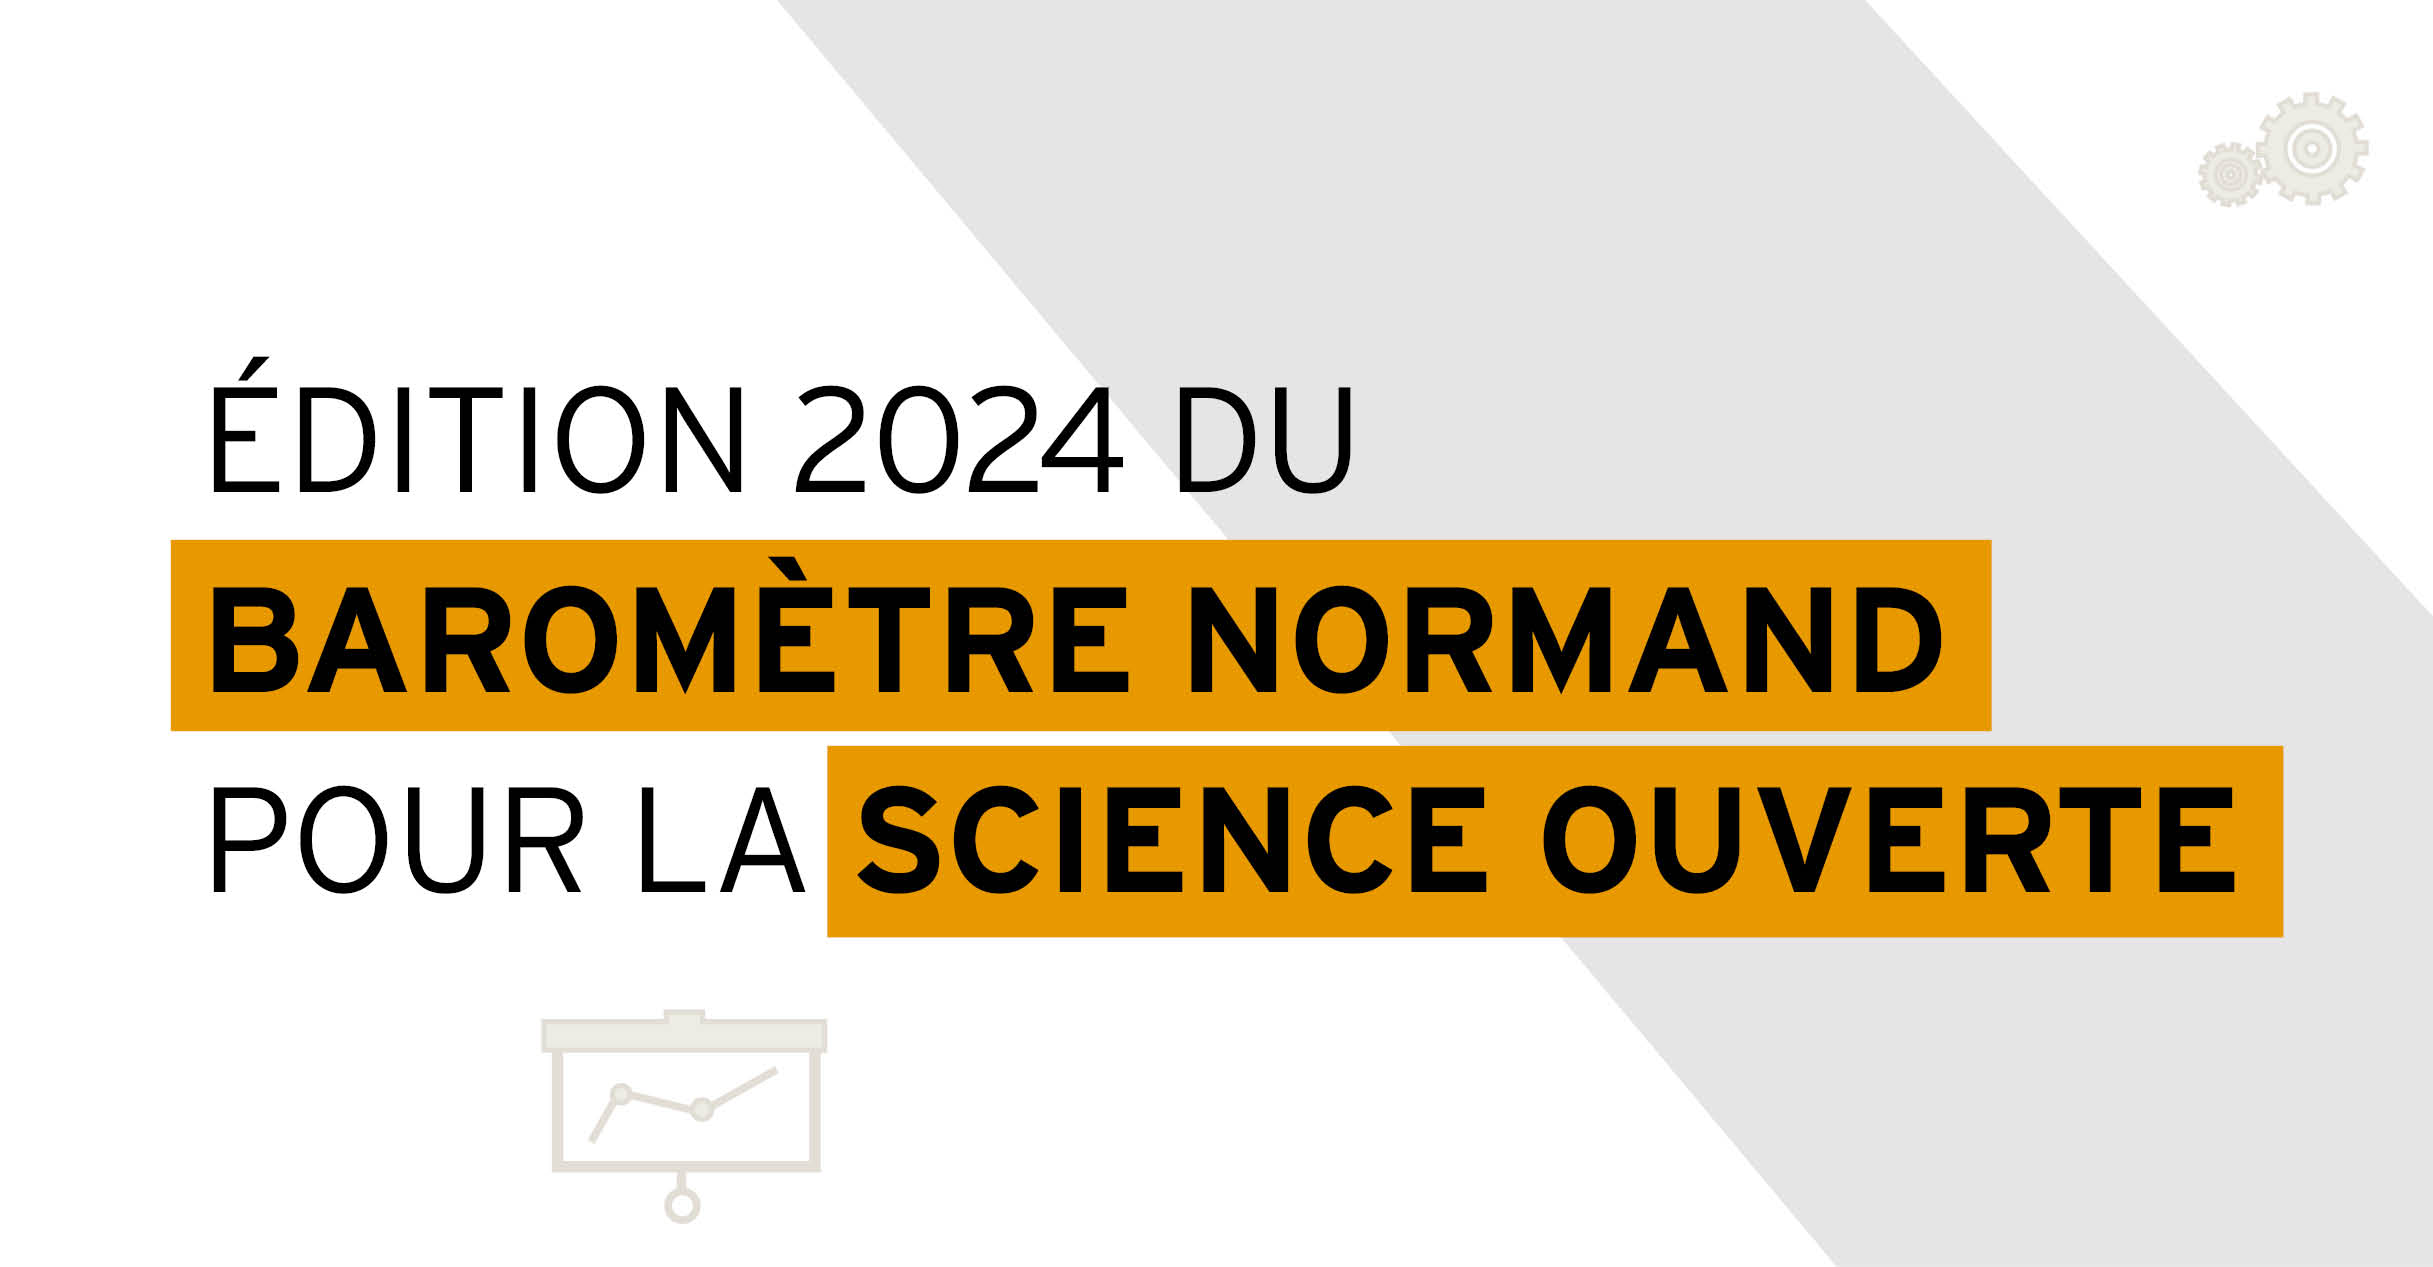 édition 2024 du baromètre normand pour la science ouverte